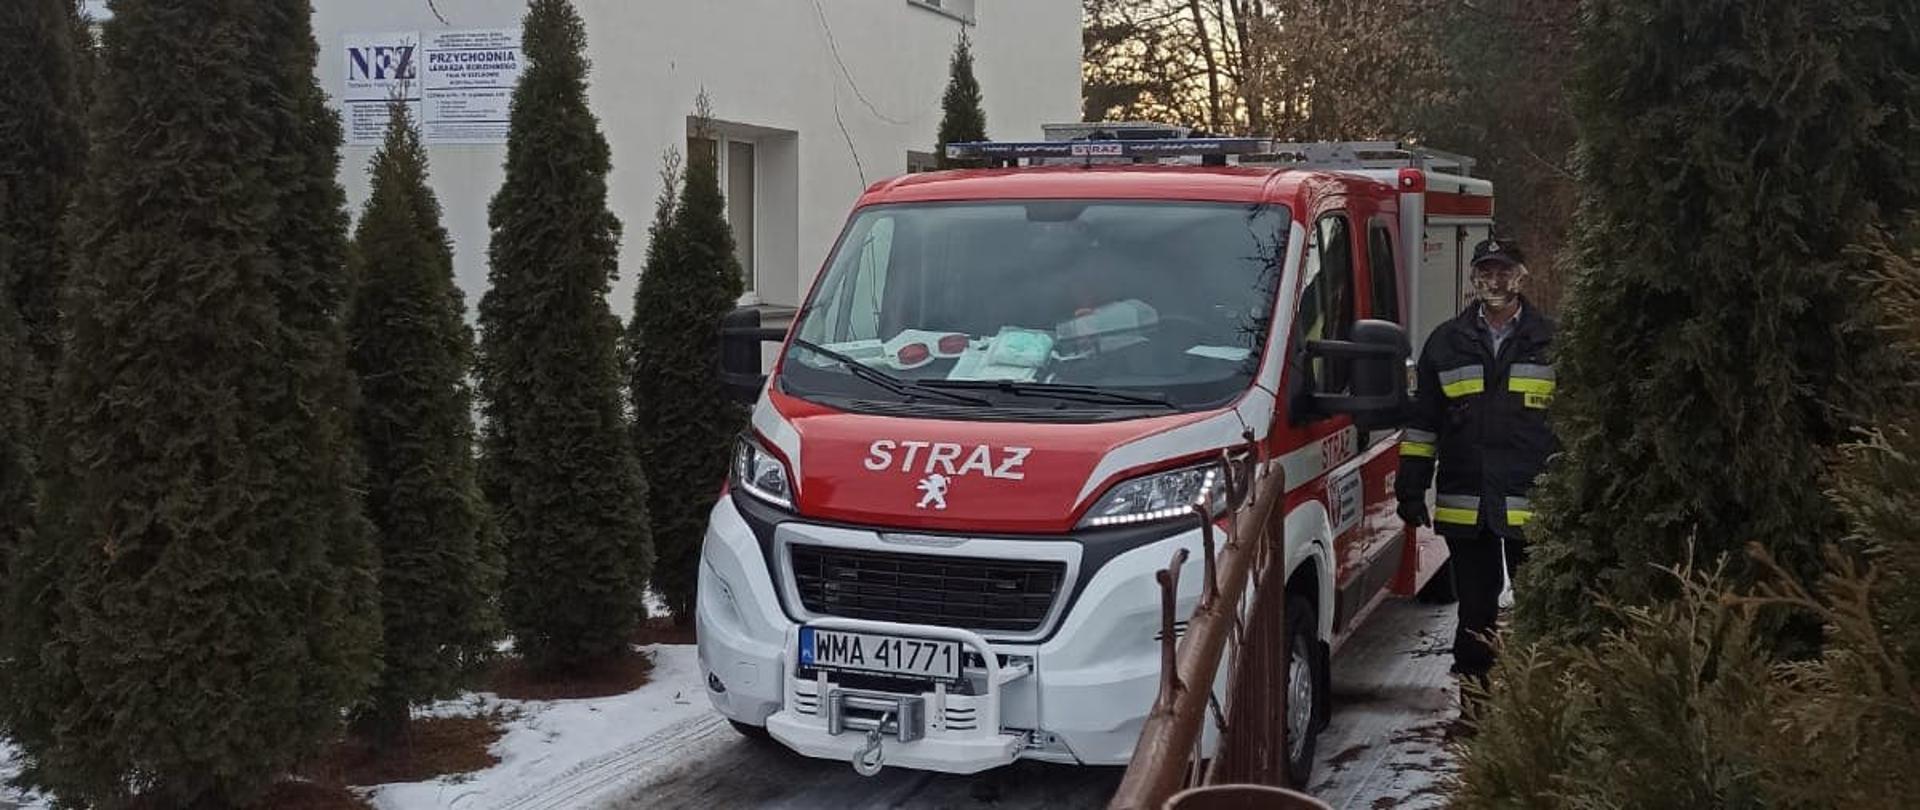 Samochód strażacki OSP Szelków stoi zaparkowany na podjeździe przed przychodnią lekarską. Obok samochodu po jego lewej stronie stoi kierowca.